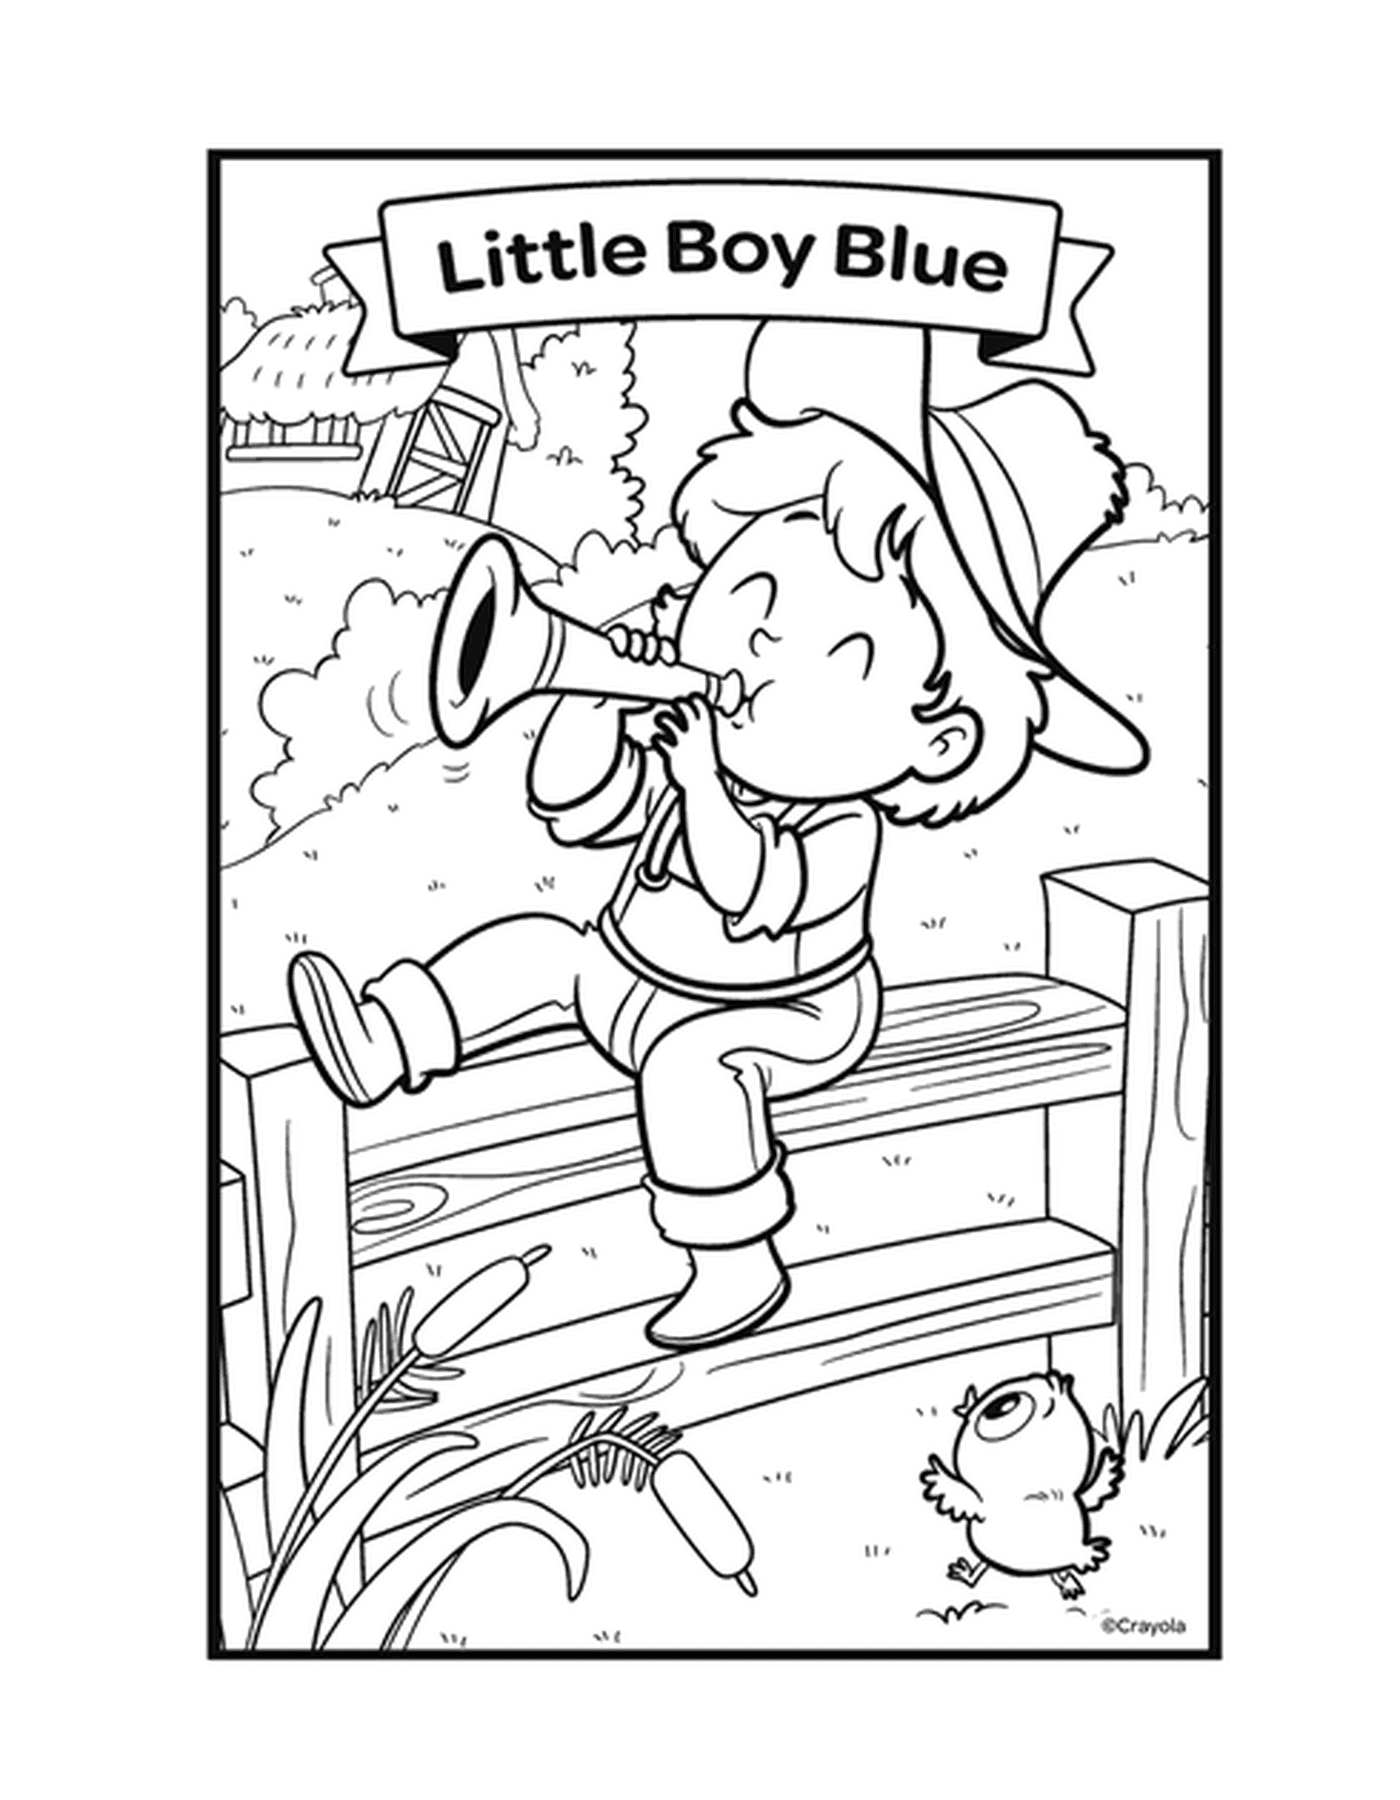  قافية الولد الصغير الازرق الازرق مع فتى يلعب على مقعد 